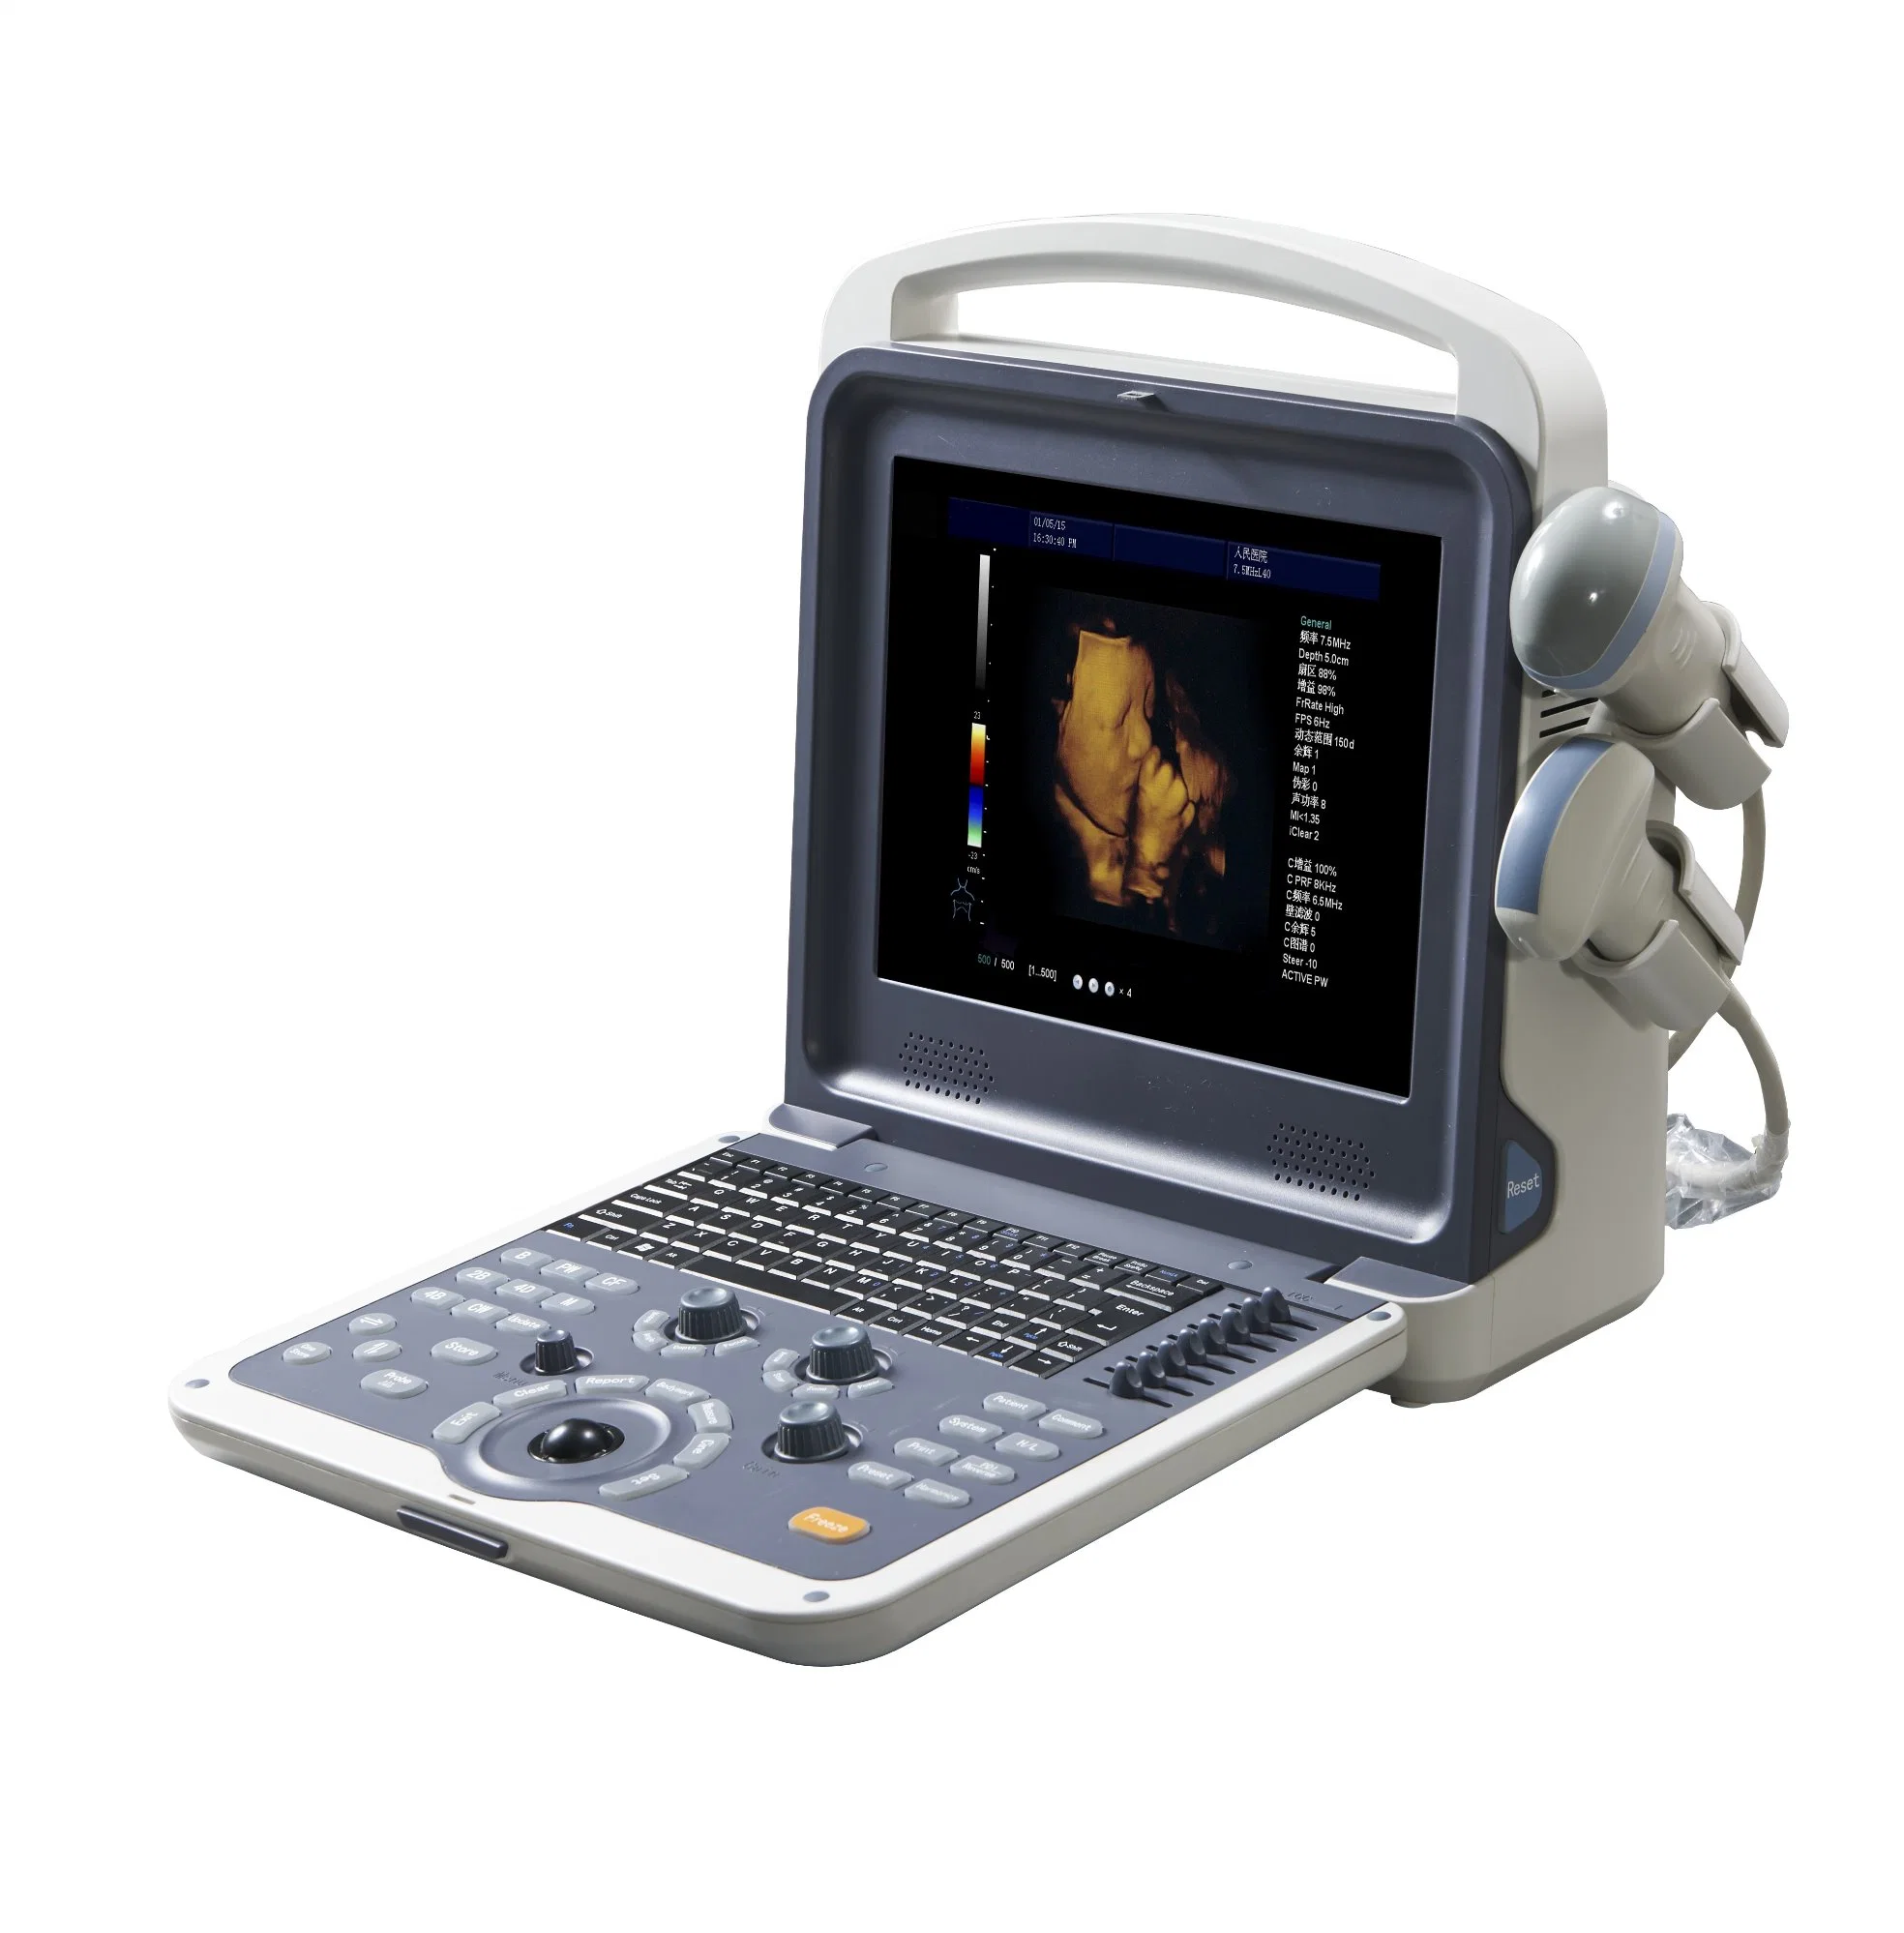 3D/4D Image scanner de ultra-sonografia Doppler em Cores Médica semelhante ao Mindray M9